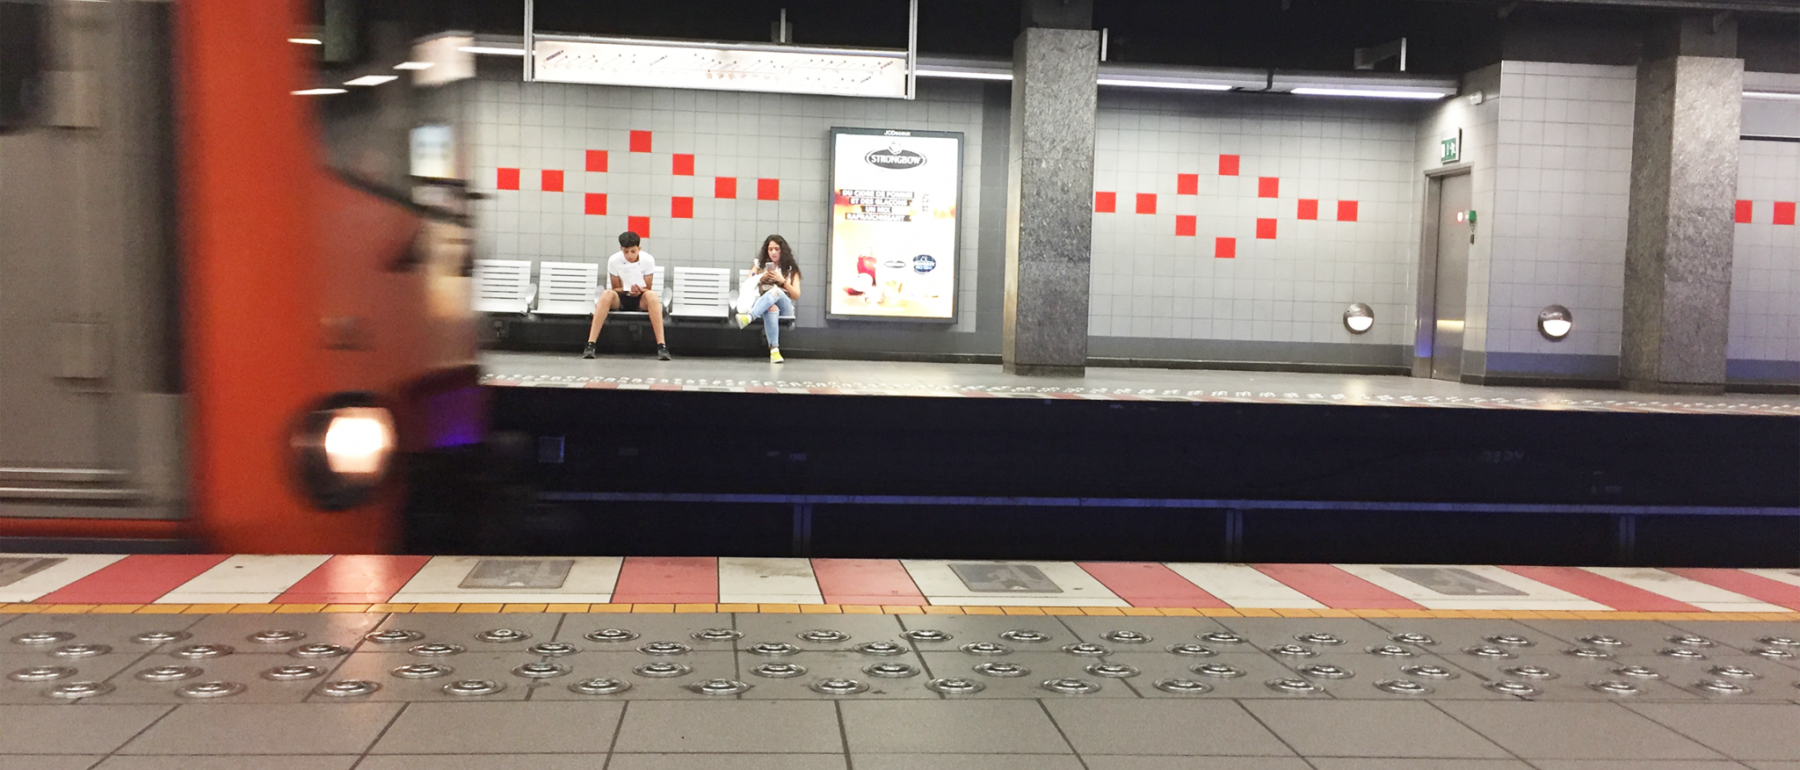 Brussel metro